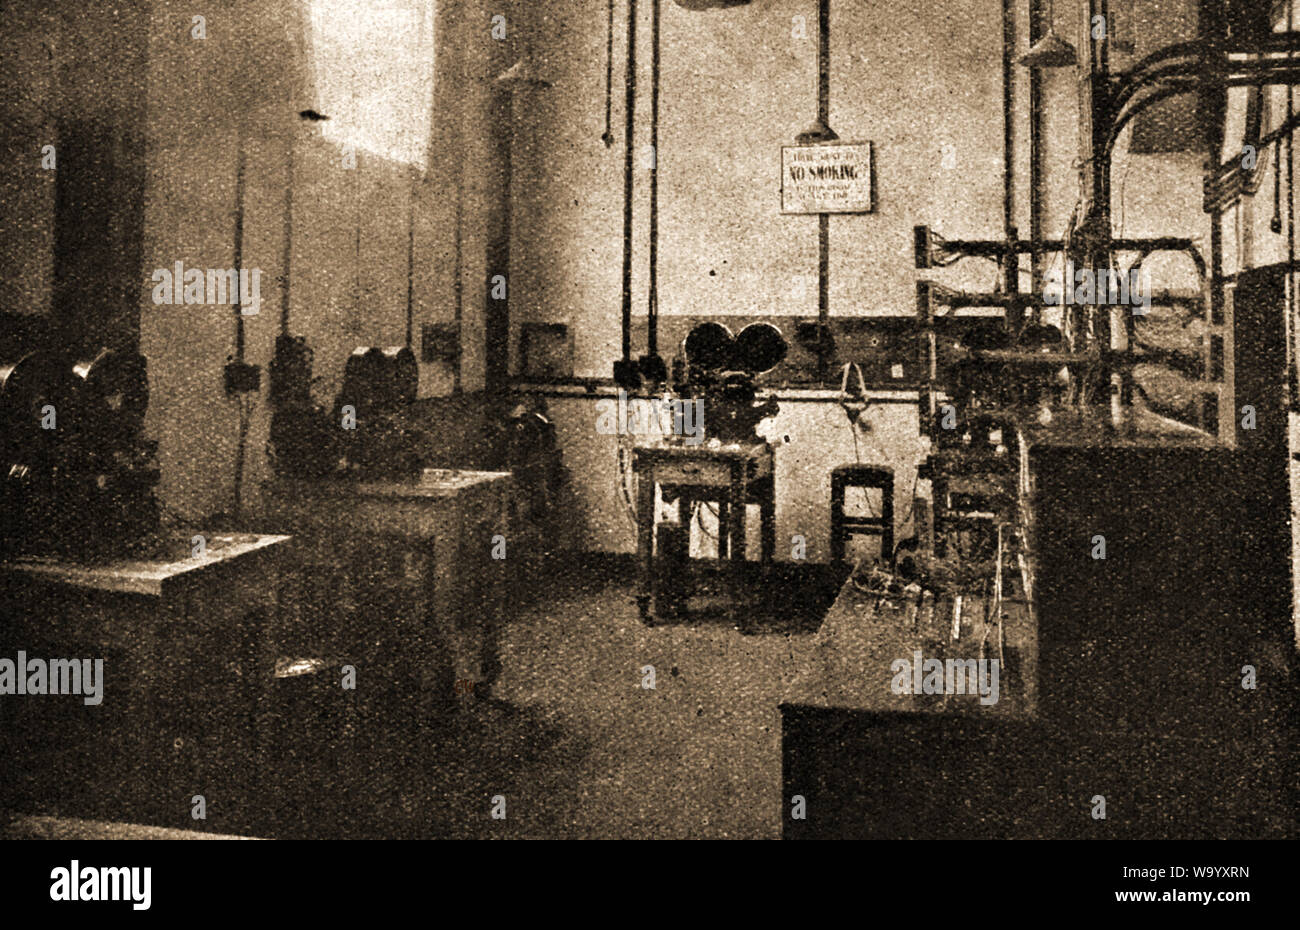 ELSTREE 'Casa dell'industria cinematografica inglese' - Un inizio di rara foto del film di Elstree Studios centrale sala di registrazione in Inghilterra. Costruzione di studio ha iniziato 1925 Foto Stock